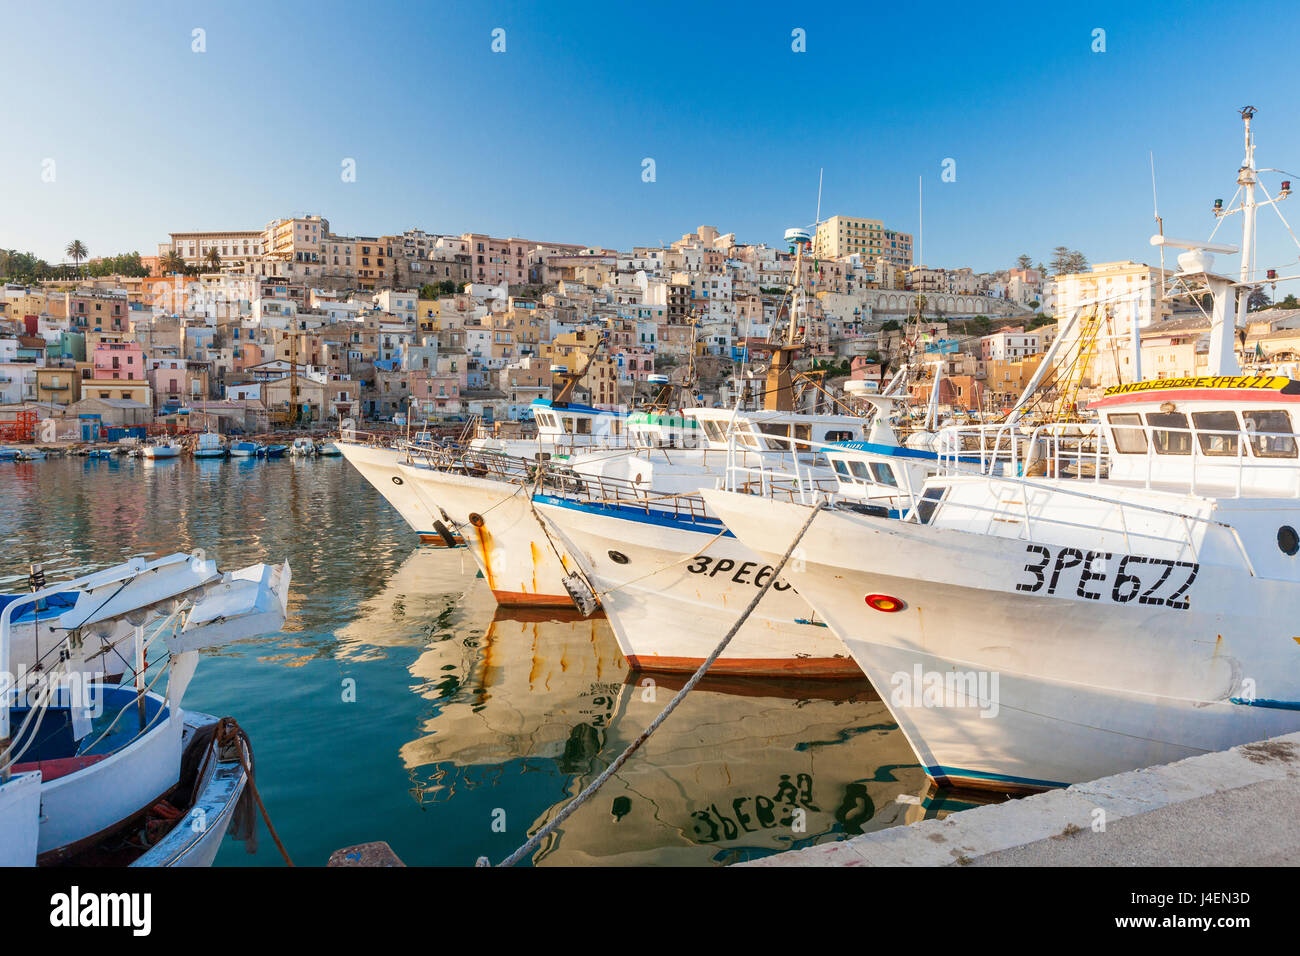 Les bateaux de pêche amarrés dans le port entouré de bleu de la mer et de la vieille ville, Sciacca, Province d'Agrigente, Sicile, Italie Banque D'Images